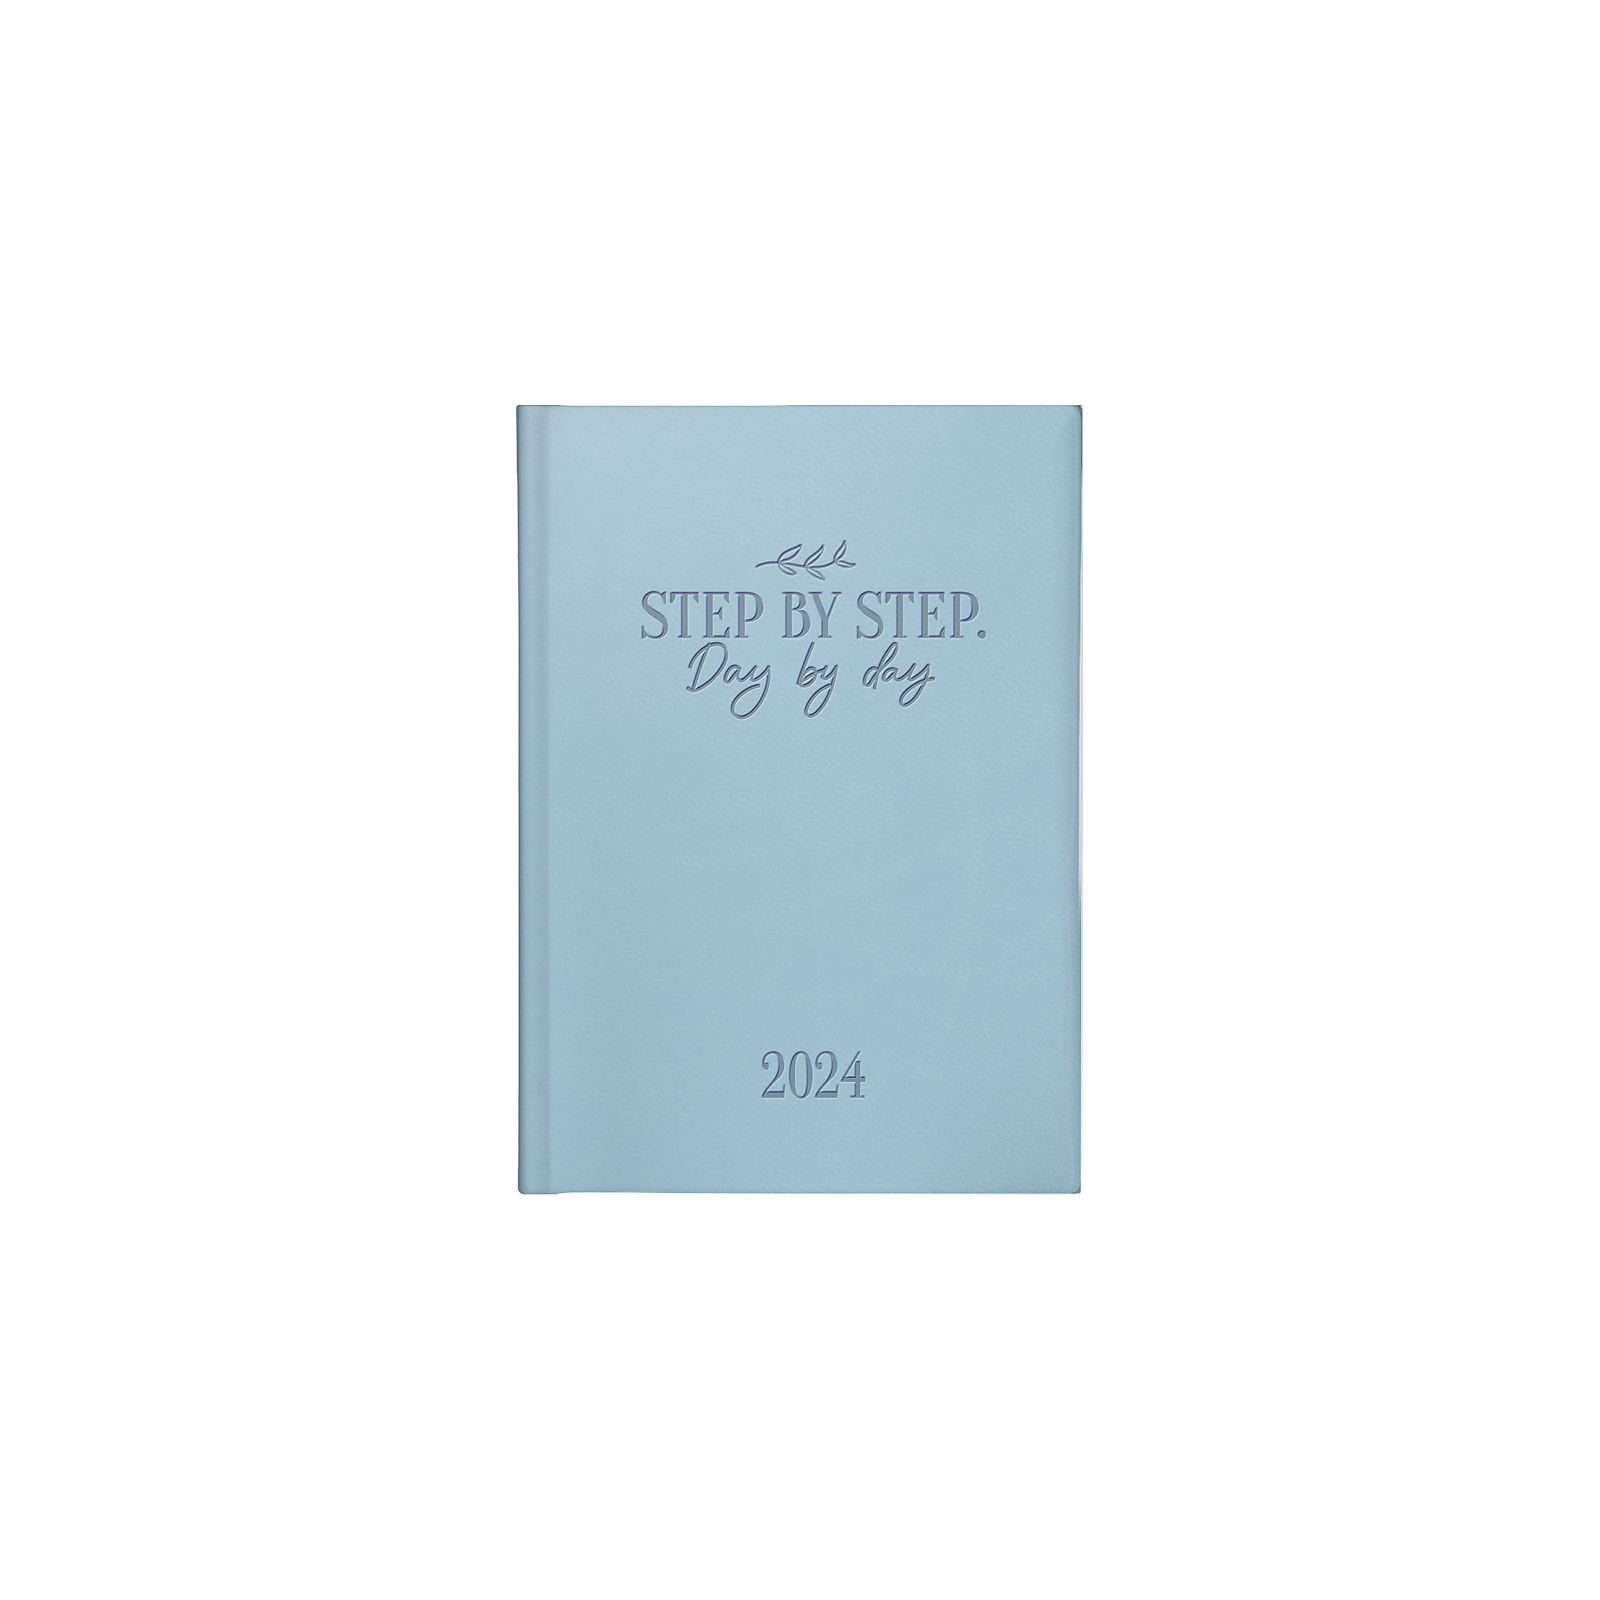 Еженедельник Brunnen датированный 2024 Torino Trend карманный A6 10х14 см 184 страницы (73-736 31 304)